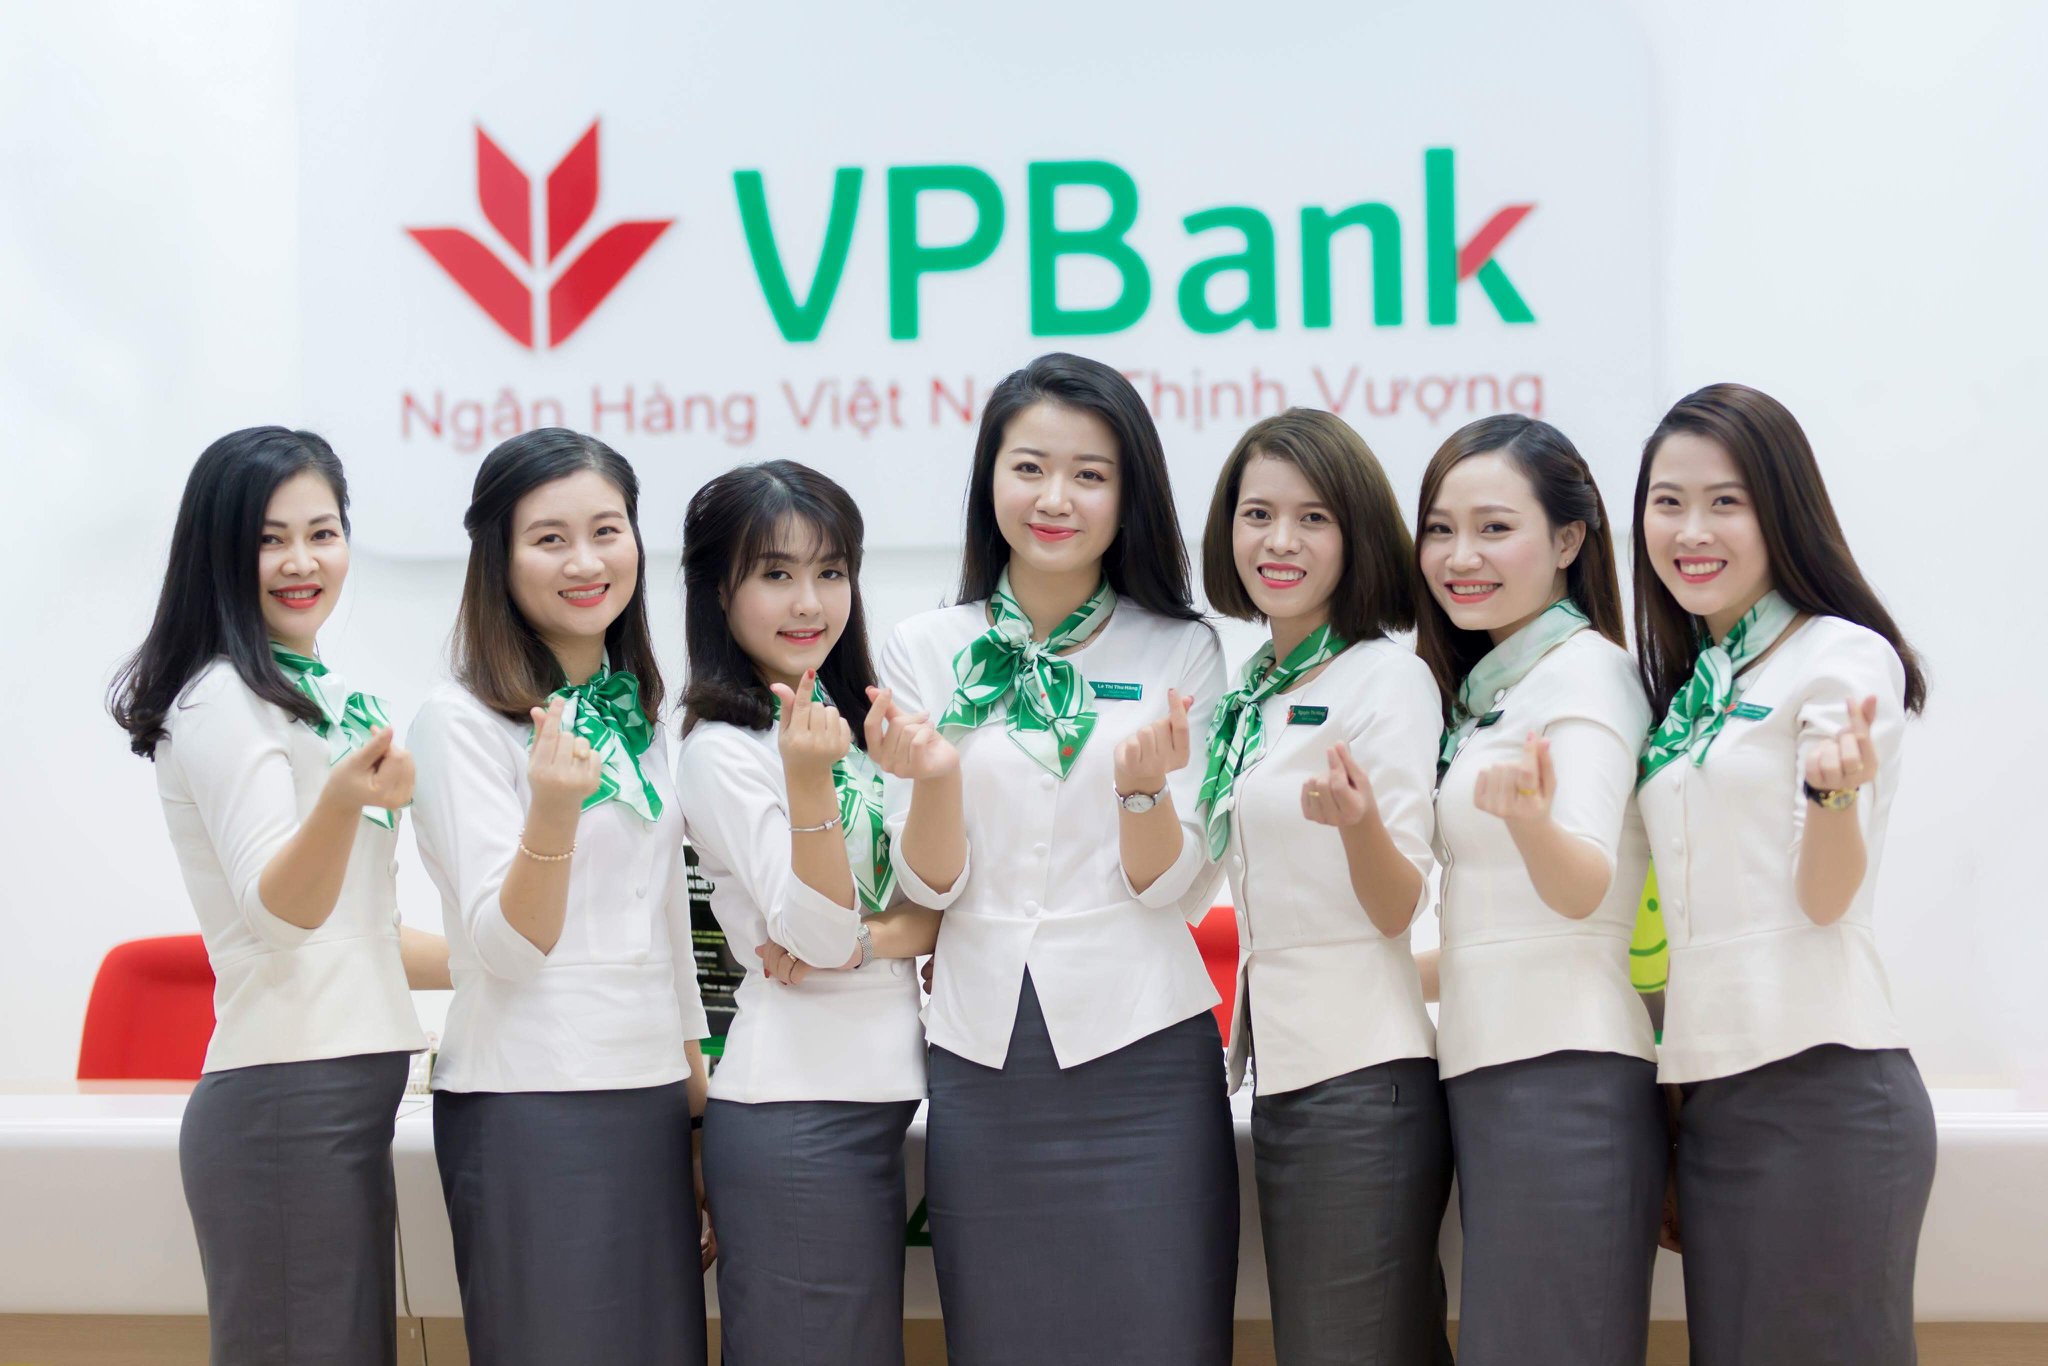 VPBank - Ngân hàng TMCP Việt Nam Thịnh Vượng (VPBank) Thông báo Tuyển dụng  Chuyên viên Hỗ trợ Tín dụng tại Hồ Chí Minh [26.03] | U&Bank